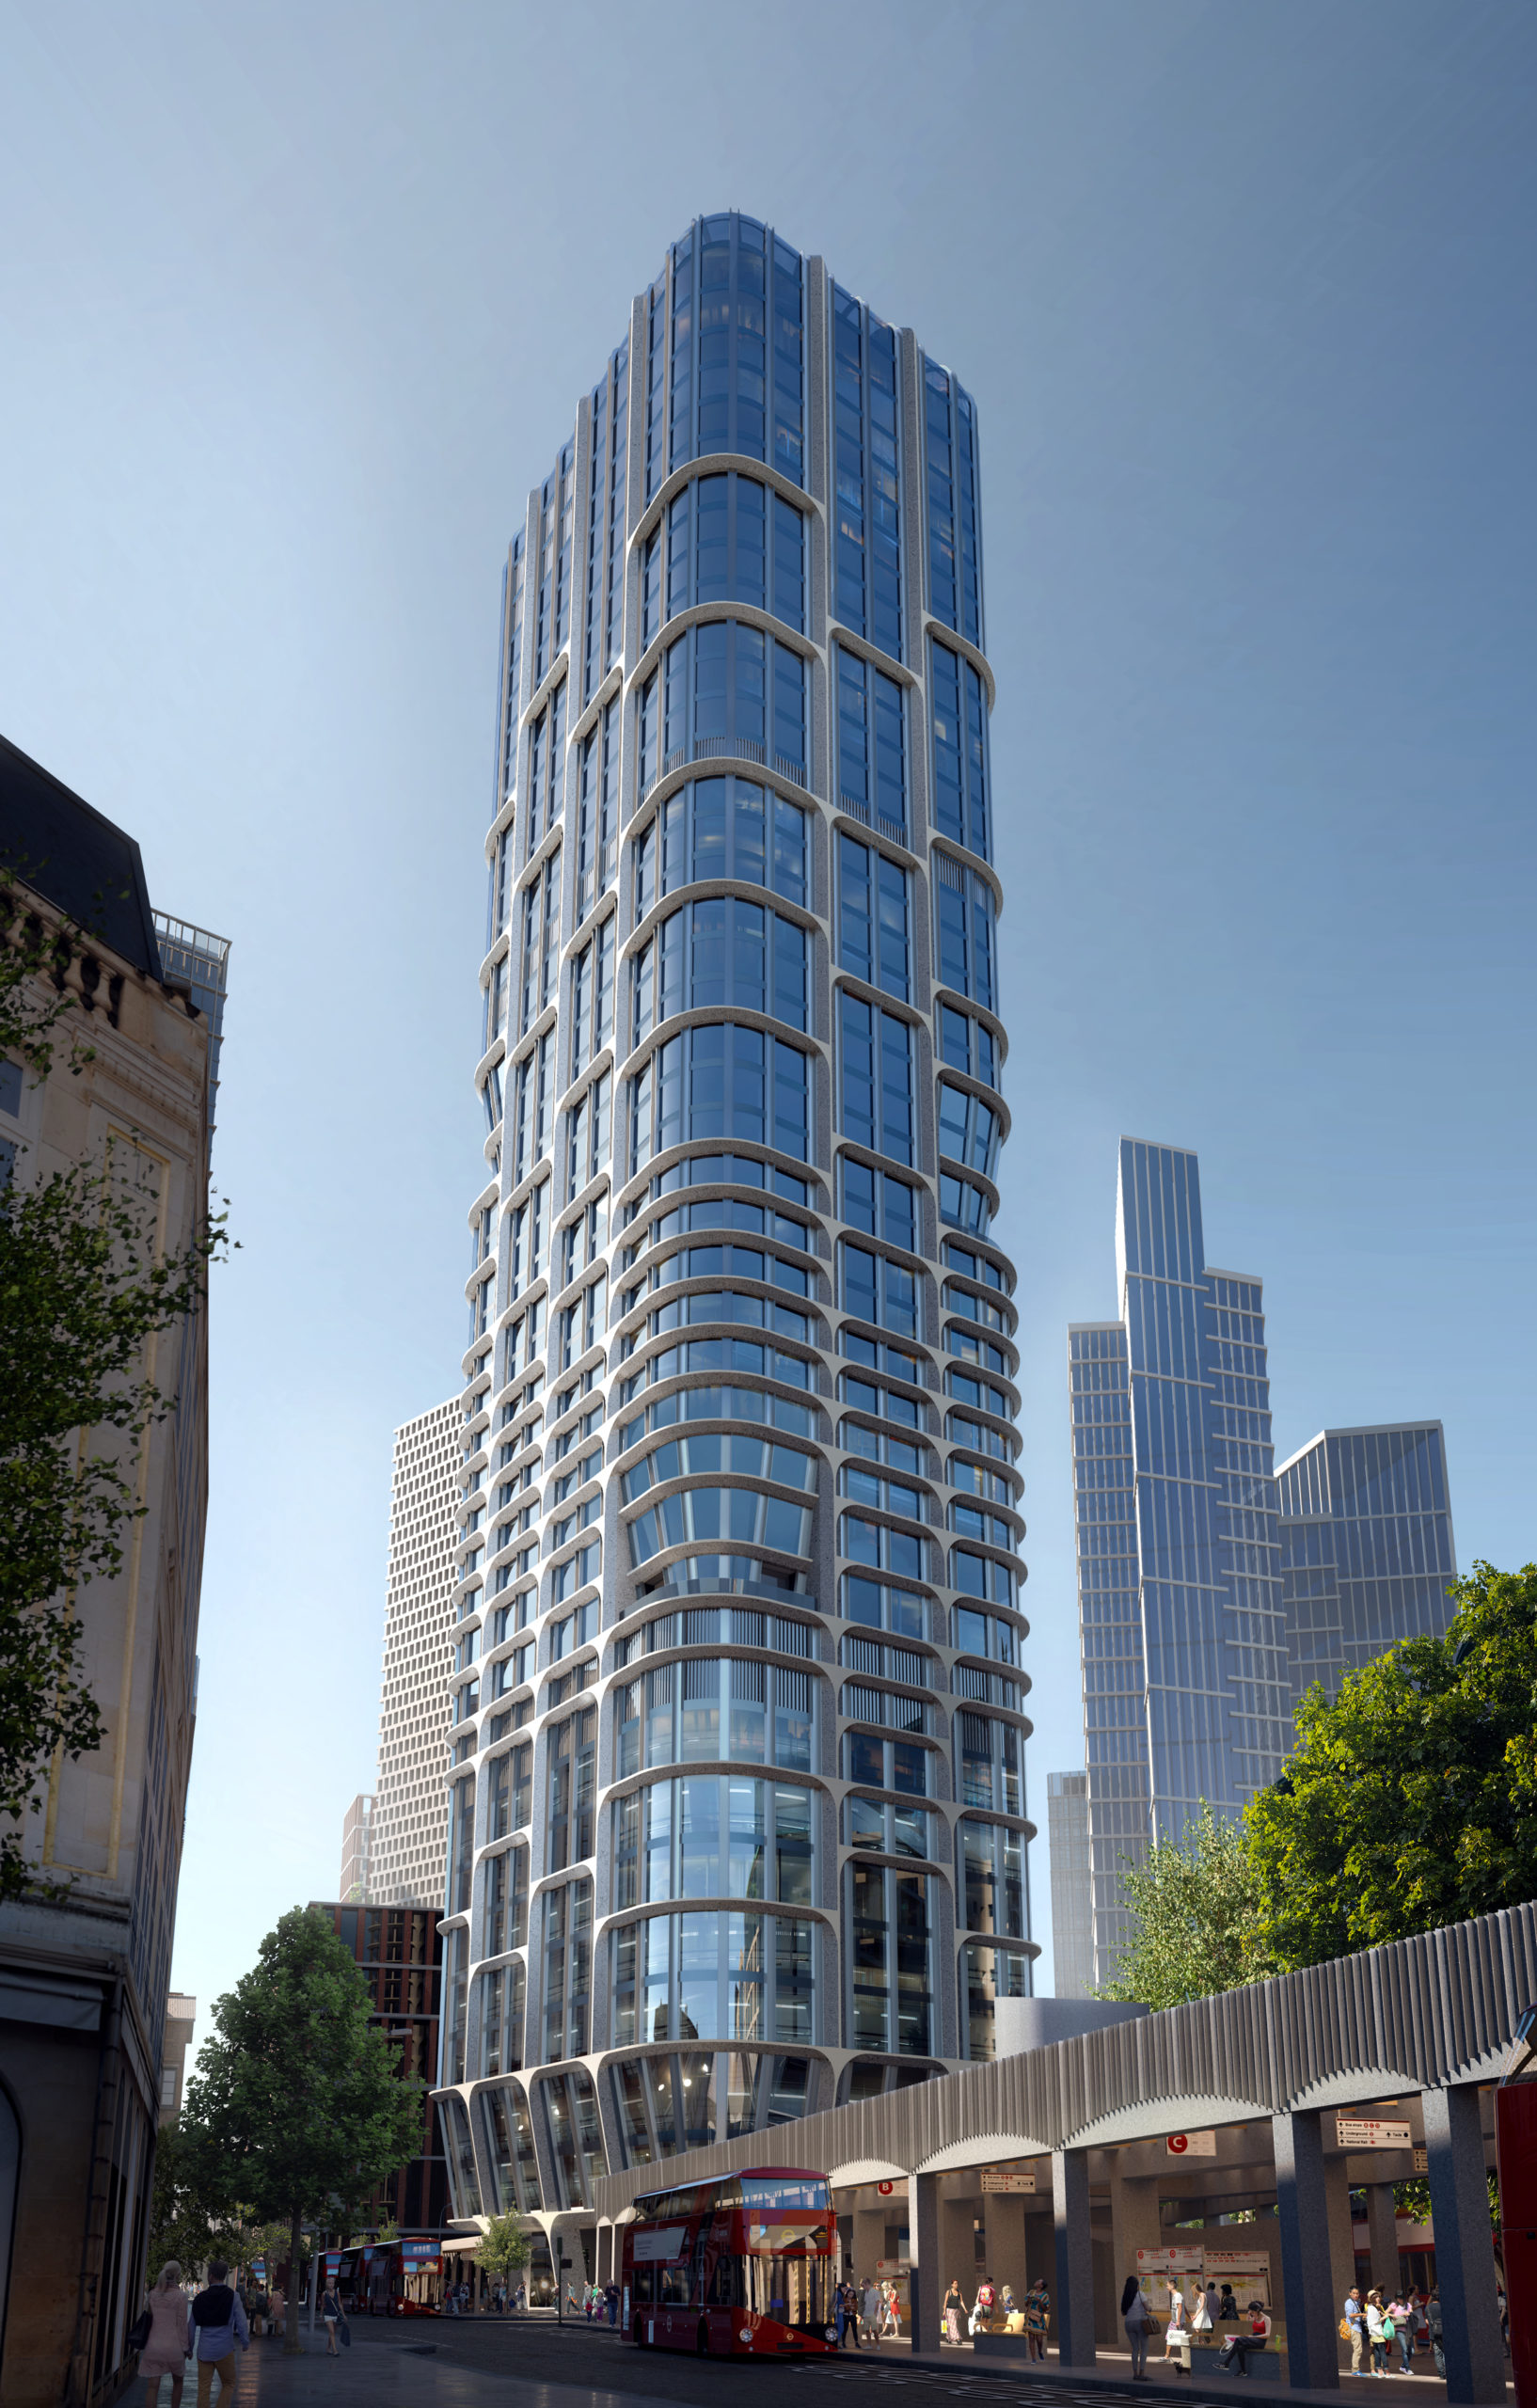 ヴォクソール クロスアイランドタワーの計画を承認 Zaha Hadidが設計した高層ビルのペアがロンドンに登場 Re Urbanization 再都市化